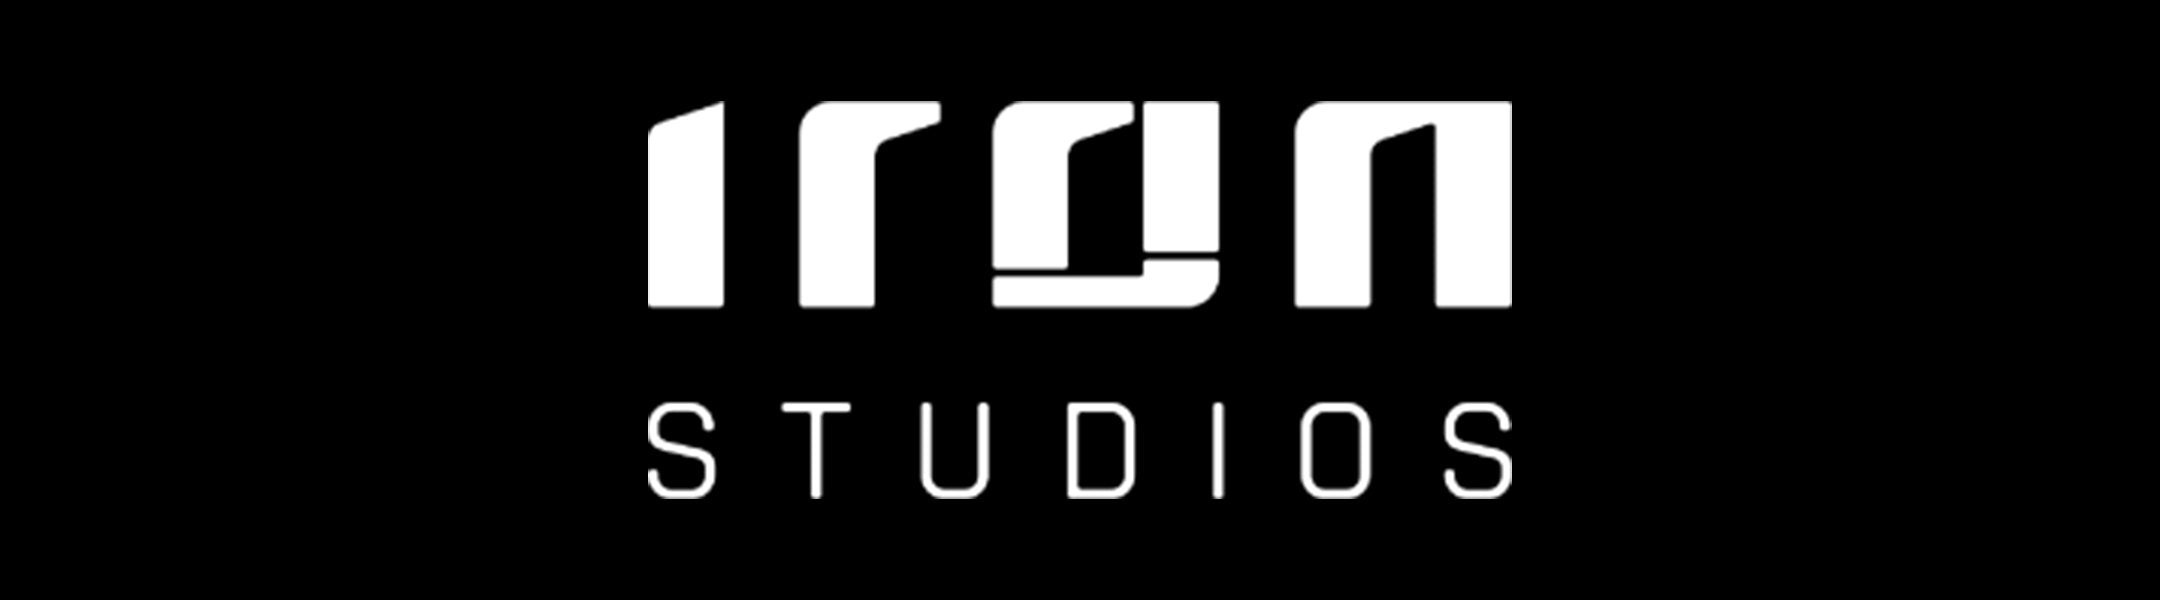 Iron Studios Disponibles